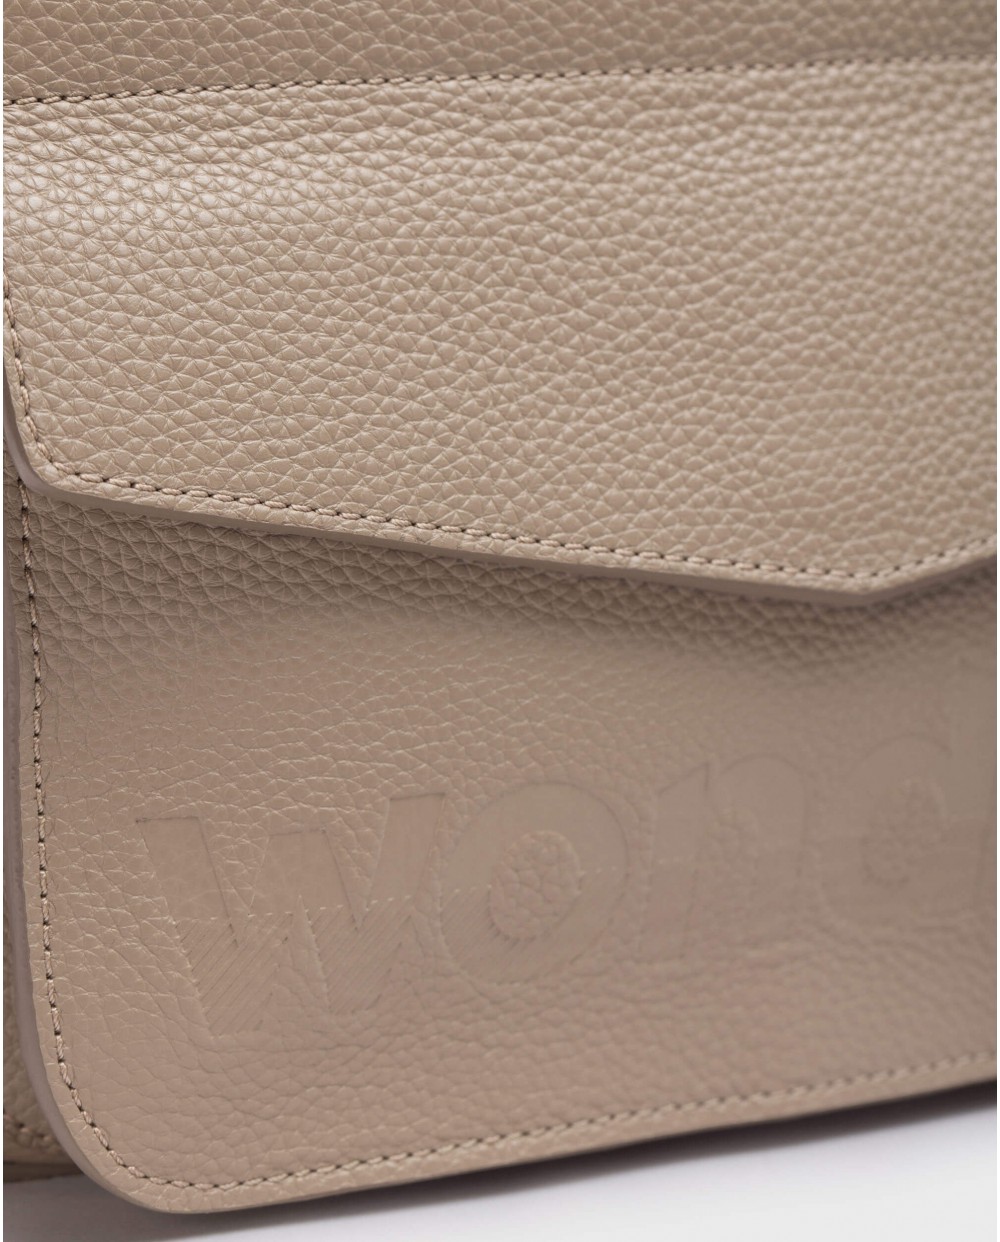 Wonders-Bags-Brown Pocket bag